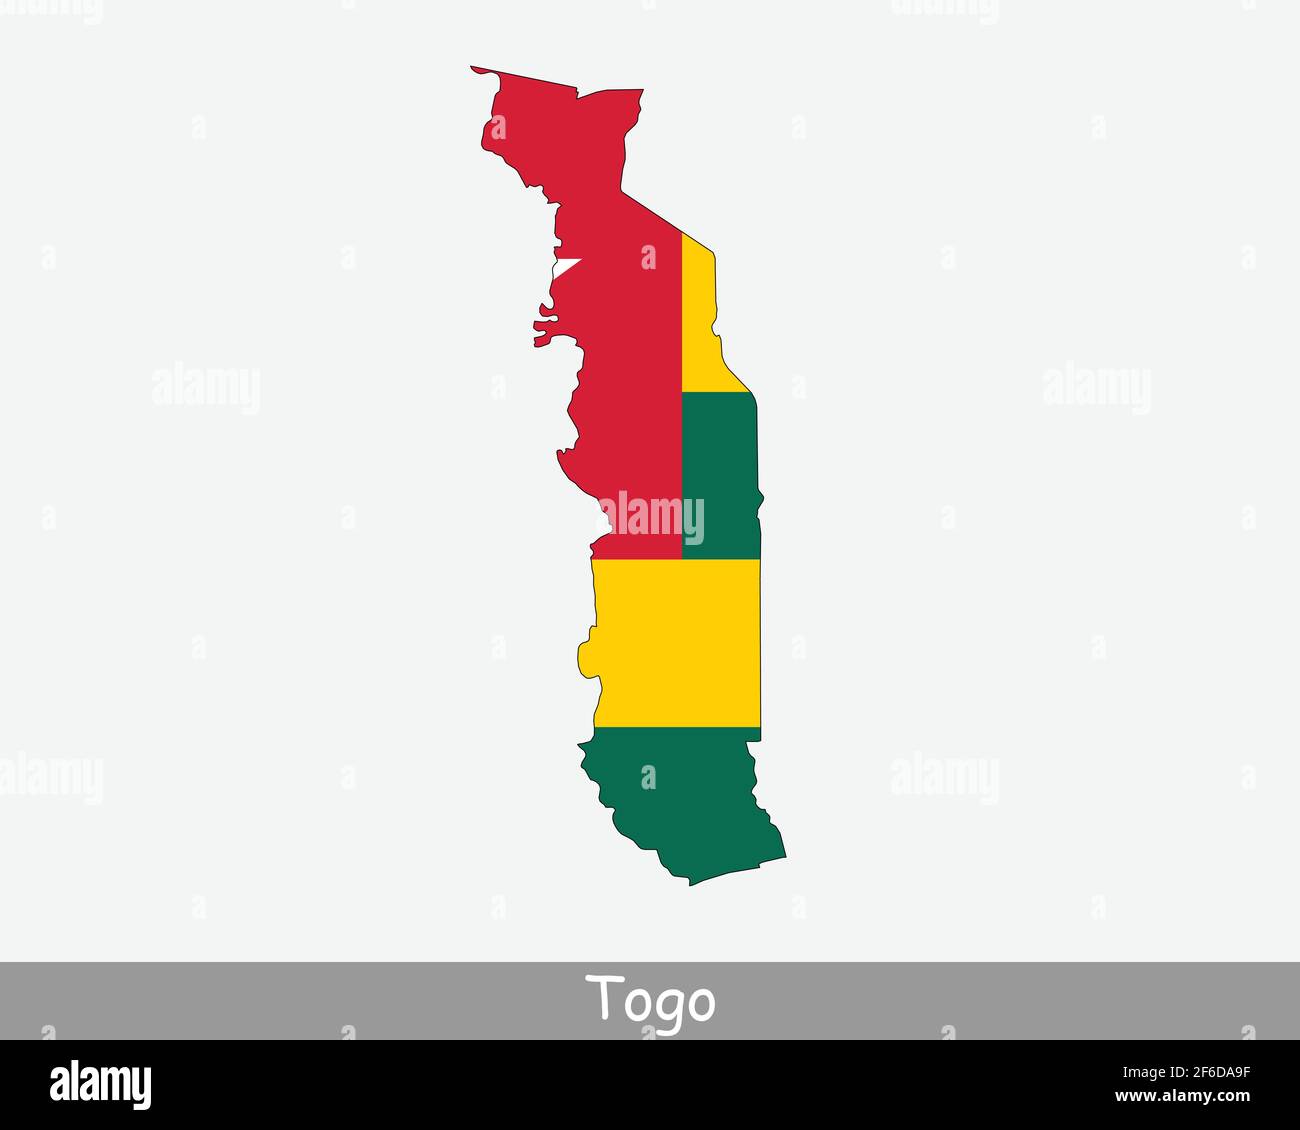 Togo Flagge Karte. Karte der togolesischen Republik mit der togolesischen Nationalflagge isoliert auf weißem Hintergrund. Vektorgrafik. Stock Vektor